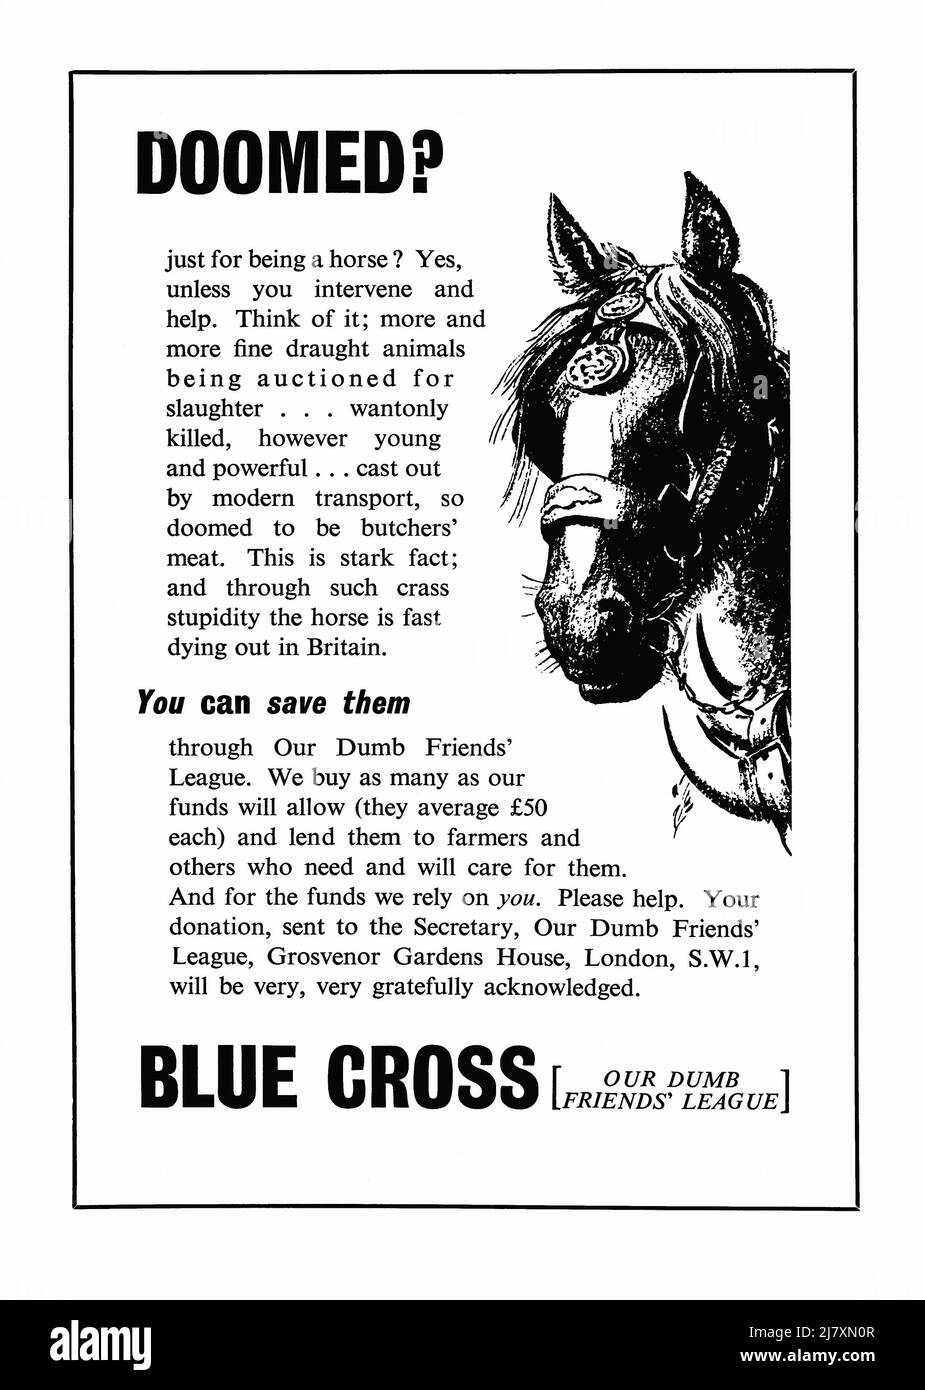 Un annuncio del 1953 per la carità di benessere degli animali la Croce Blu. L'annuncio è apparso in una rivista pubblicata nel Regno Unito nel giugno di quell'anno – il numero è stato un'edizione speciale, pubblicata per segnare l'incoronazione della Regina Elisabetta. L'illustrazione mostra un cavallo che lavora e si concentra sul salvataggio di questi animali da macelleria per la carne alla fine della loro vita lavorativa. L'organizzazione è stata fondata nel 1897 a Londra come la nostra Dumb Friends League, per curare i cavalli da lavoro. Ha aperto il suo primo ospedale di animali a Victoria a Londra nel 1906 – grafica d’epoca 1950s per uso editoriale. Foto Stock